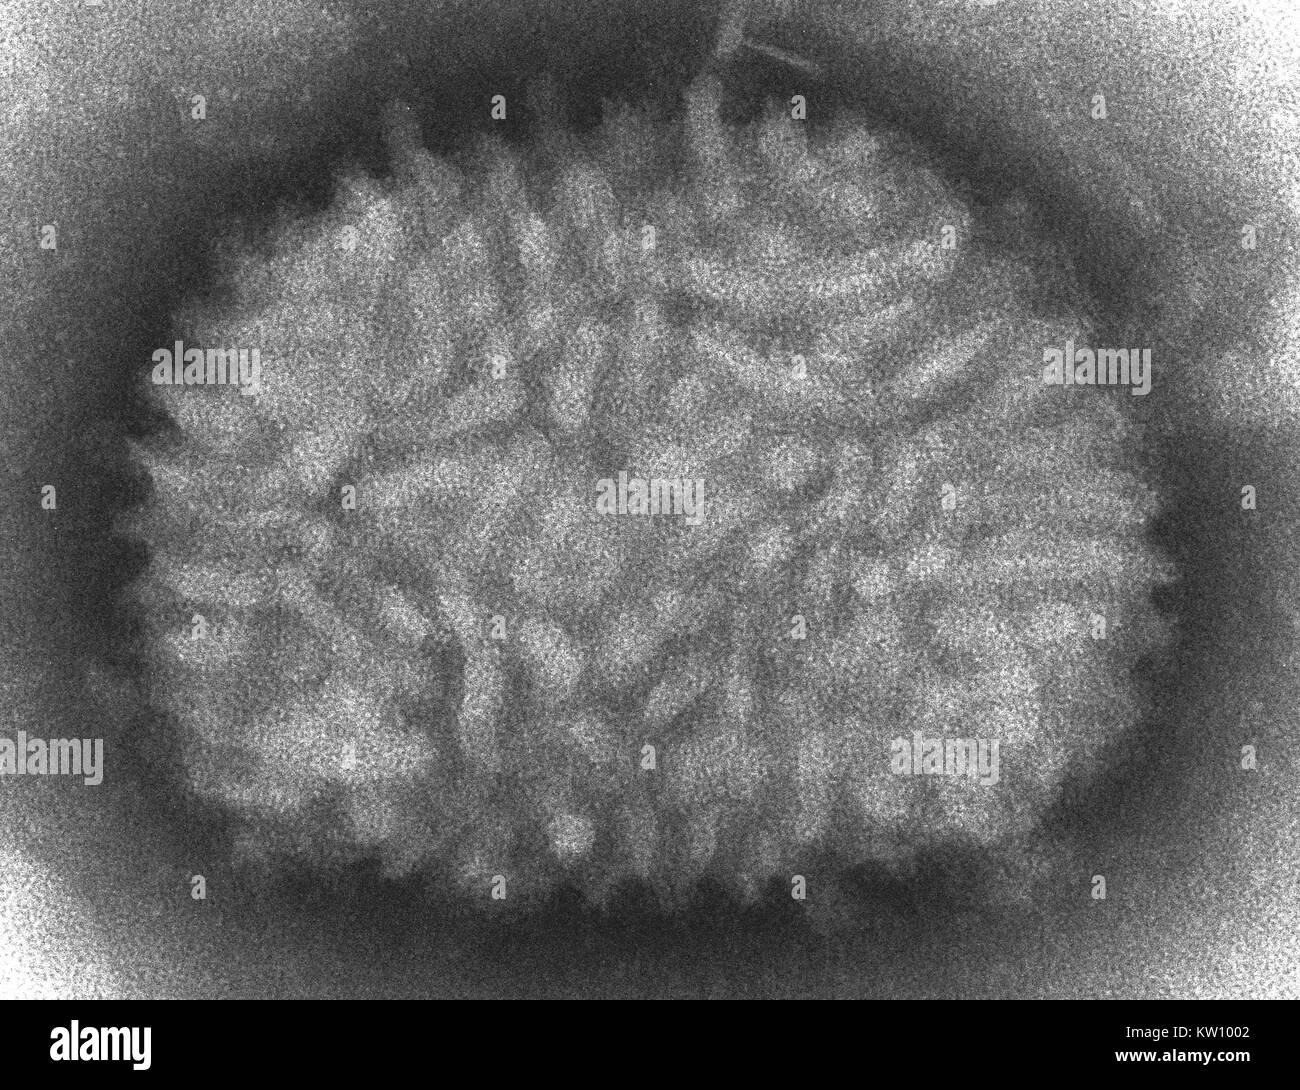 Un micrografico elettronico di un virus del vaiolo vaccino. Il virus del vaiolo vaccino è normalmente limitata ai bovini, ma viene convogliato agli esseri umani attraverso la vaccinazione, e in tal modo conferire immunità al virus del vaiolo. Immagine cortesia CDC/Cynthia Goldsmith, 2002. Foto Stock